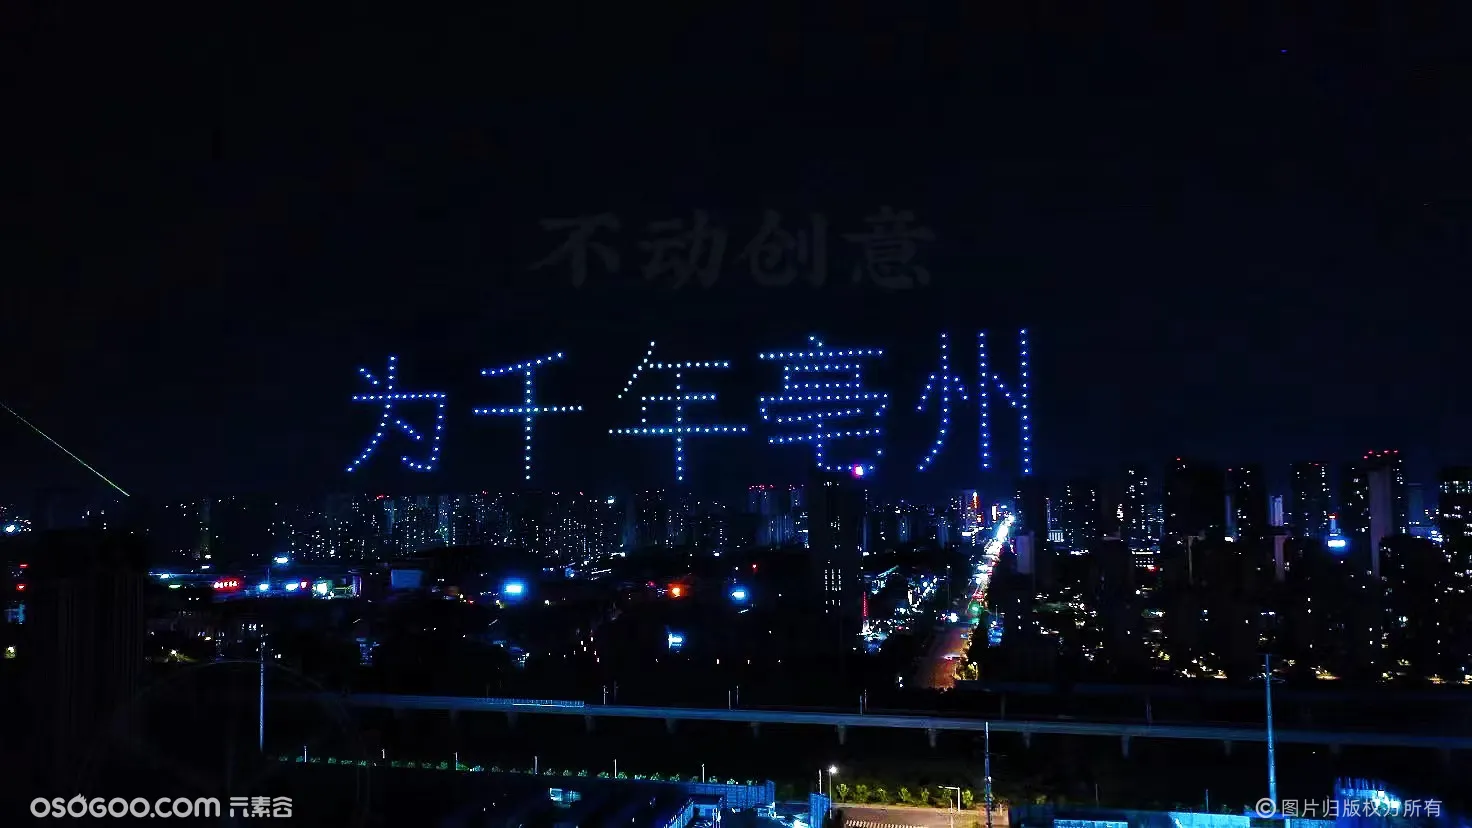 不动创意团队 亳州北京城房265台 编队无人机表演灯光秀